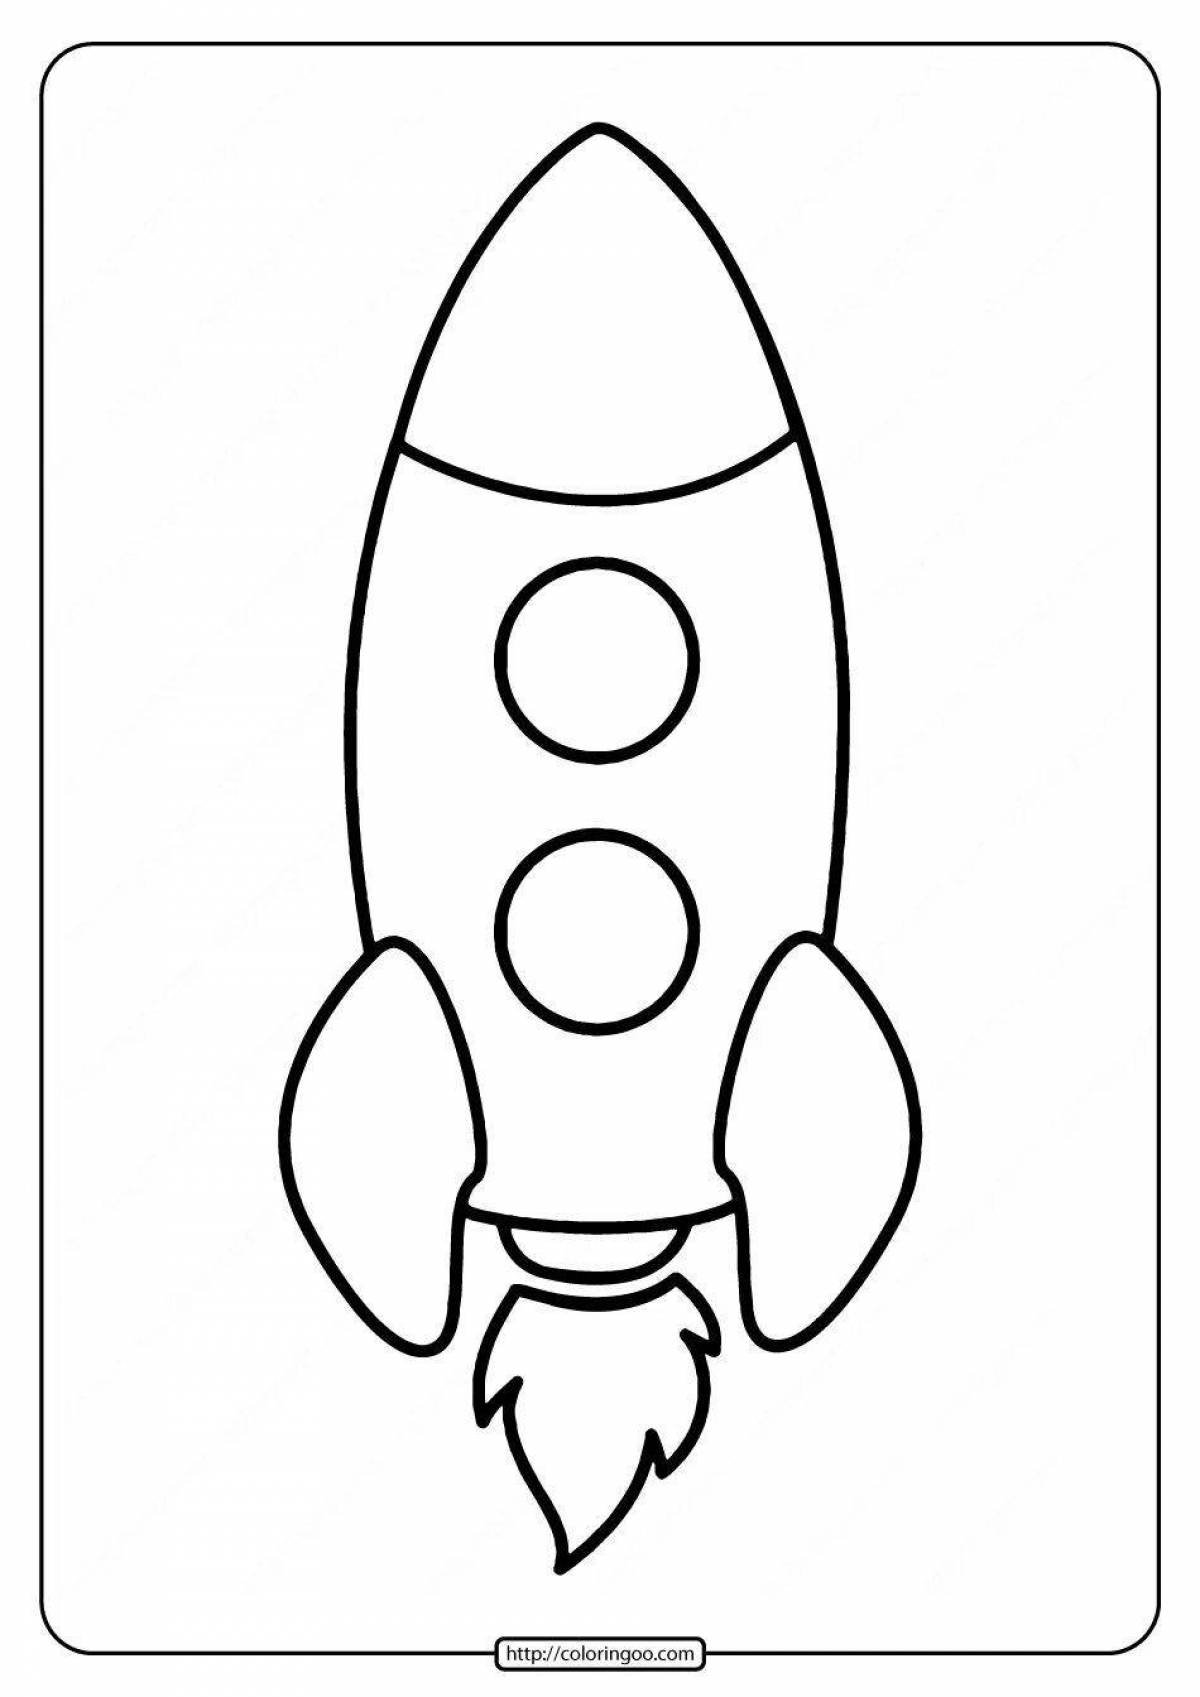 Ракета раскрасить. Ракета раскраска. Ракета раскраска для малышей. Раскраска ракета в космосе для детей. Ракета трафарет для детей.